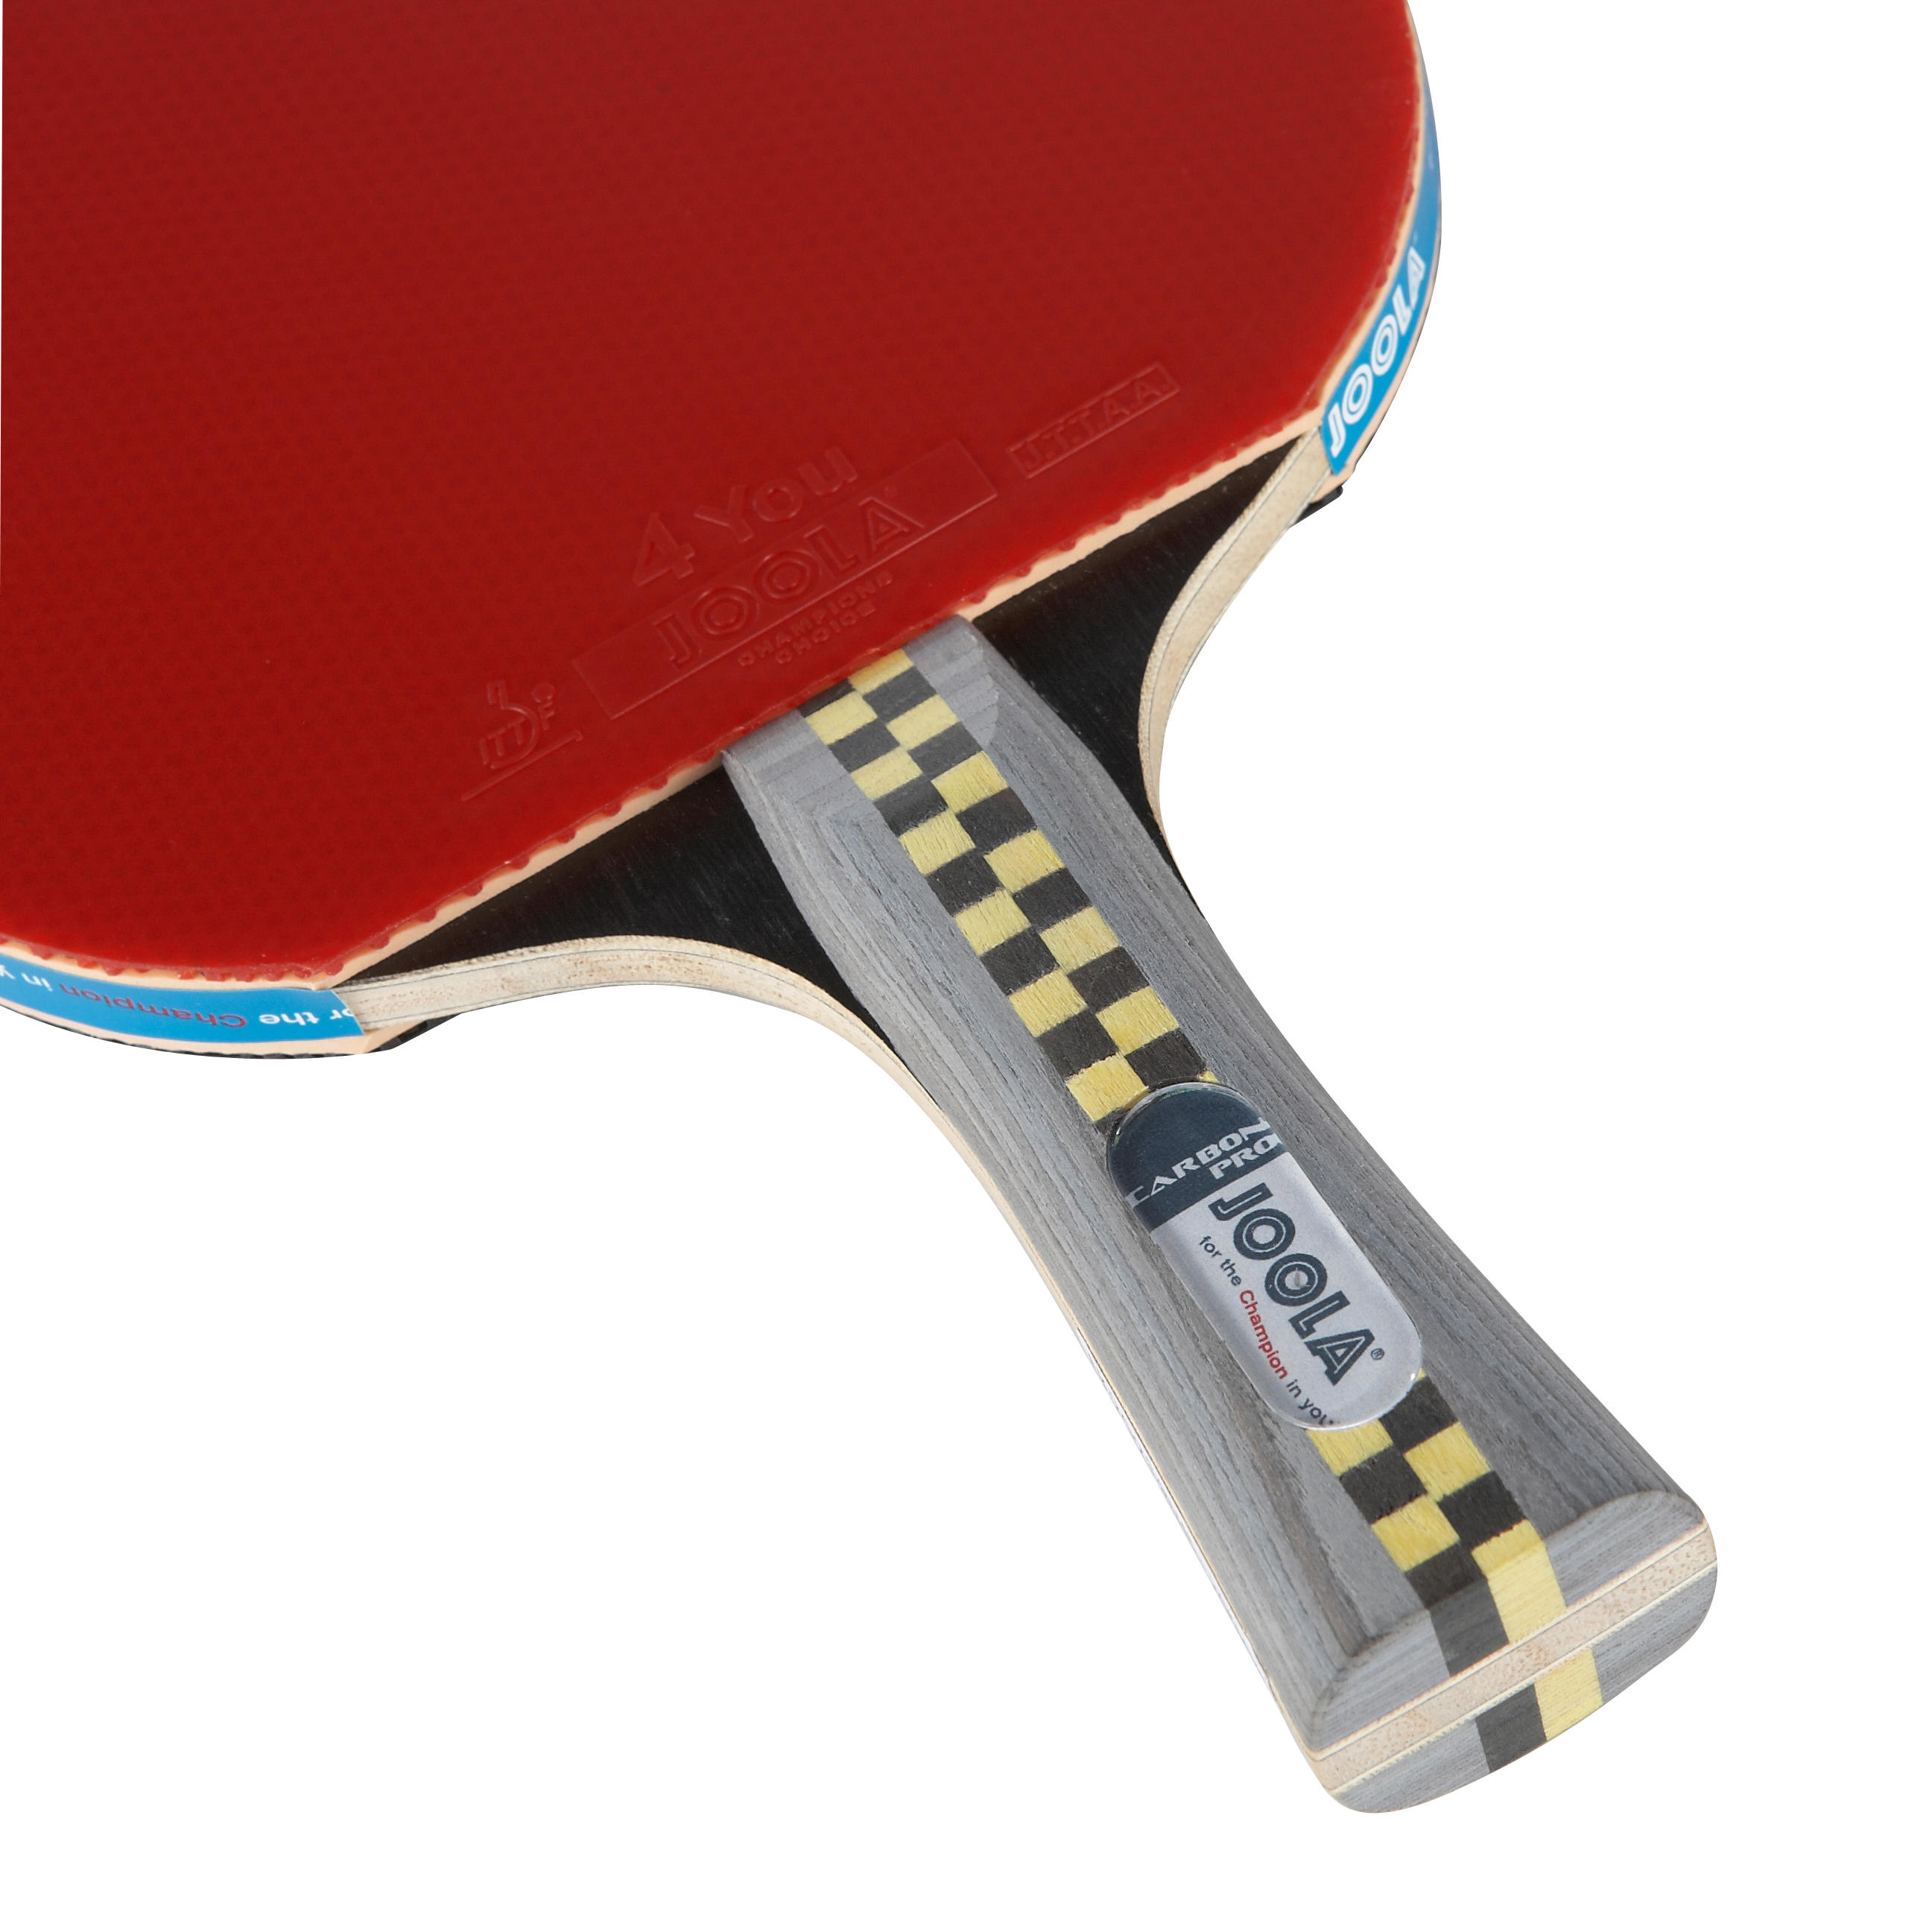 Теннис ракетка купить авито. Joola ракетки для настольного тенниса Carbon Pro. Ракетка для настольного тенниса Joola Carbon x Pro 7*. Ракетка Joola Steffen Fetzner для настольного тенниса. Ракетка для настольного тенниса Joola Mega Carbon 7*.